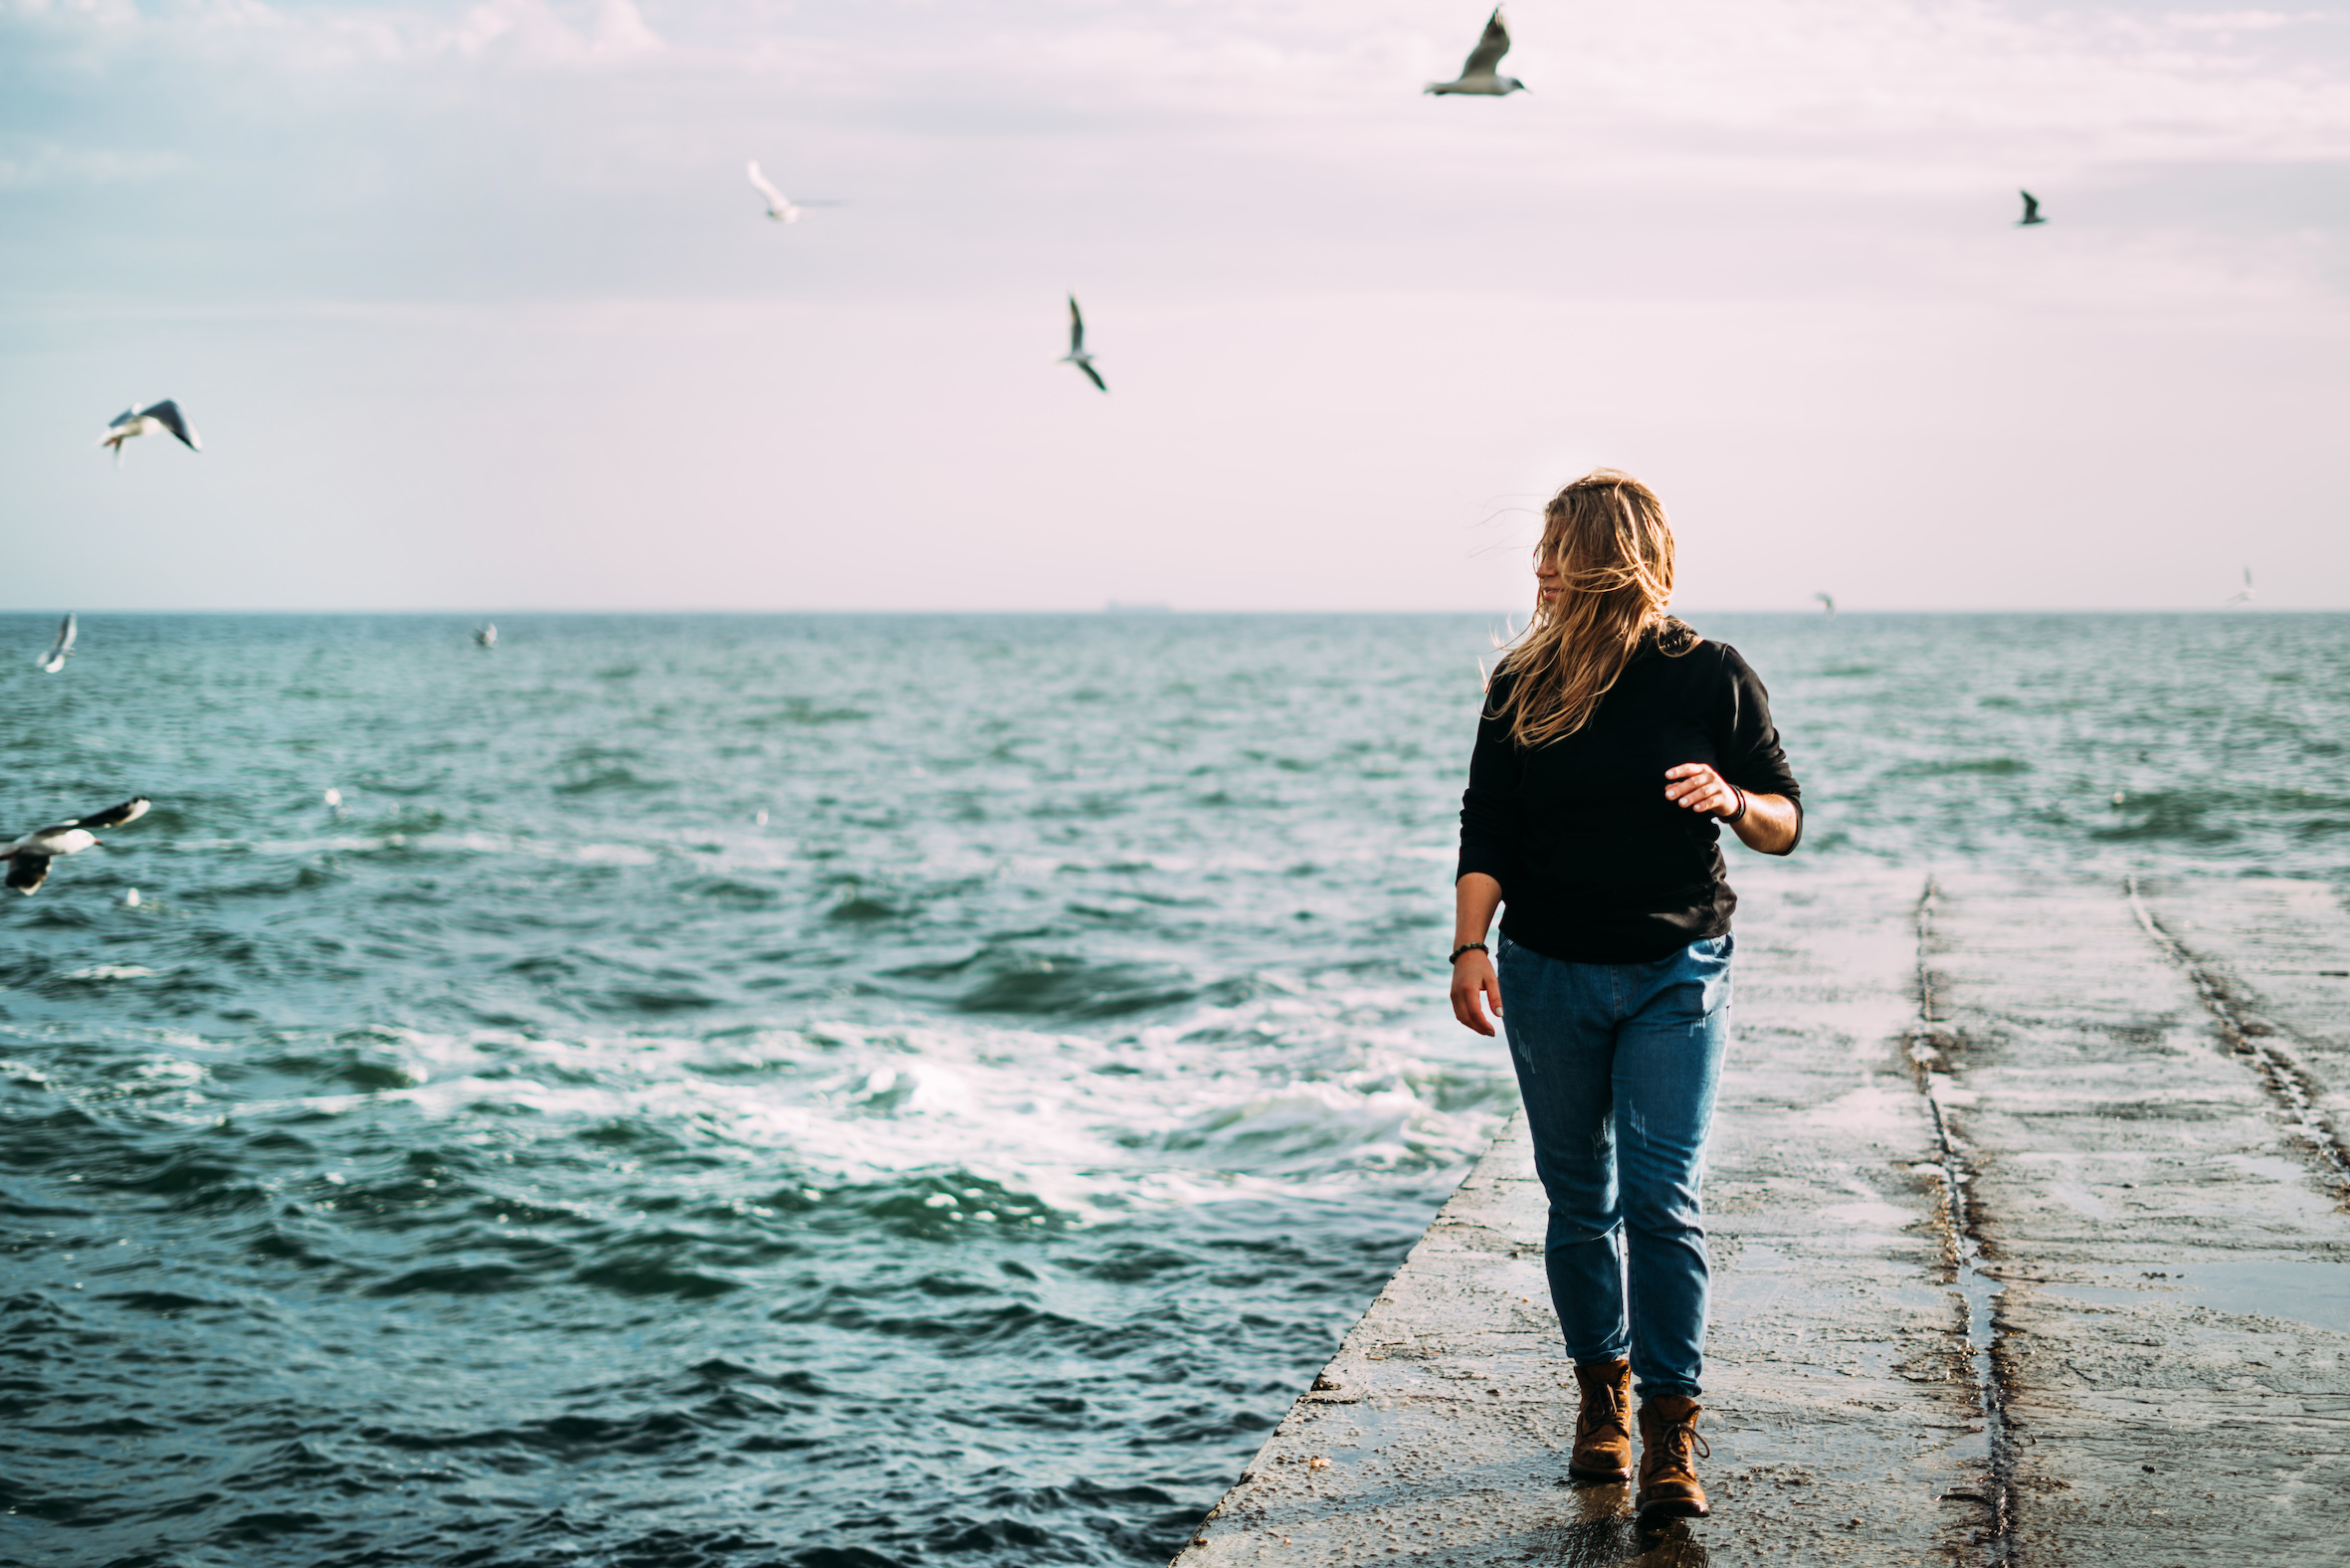 En tjej går på en brygga vid havet med vågor och hård vind i svart tröja och jeans. Rosa gryning och måsar på himlen.